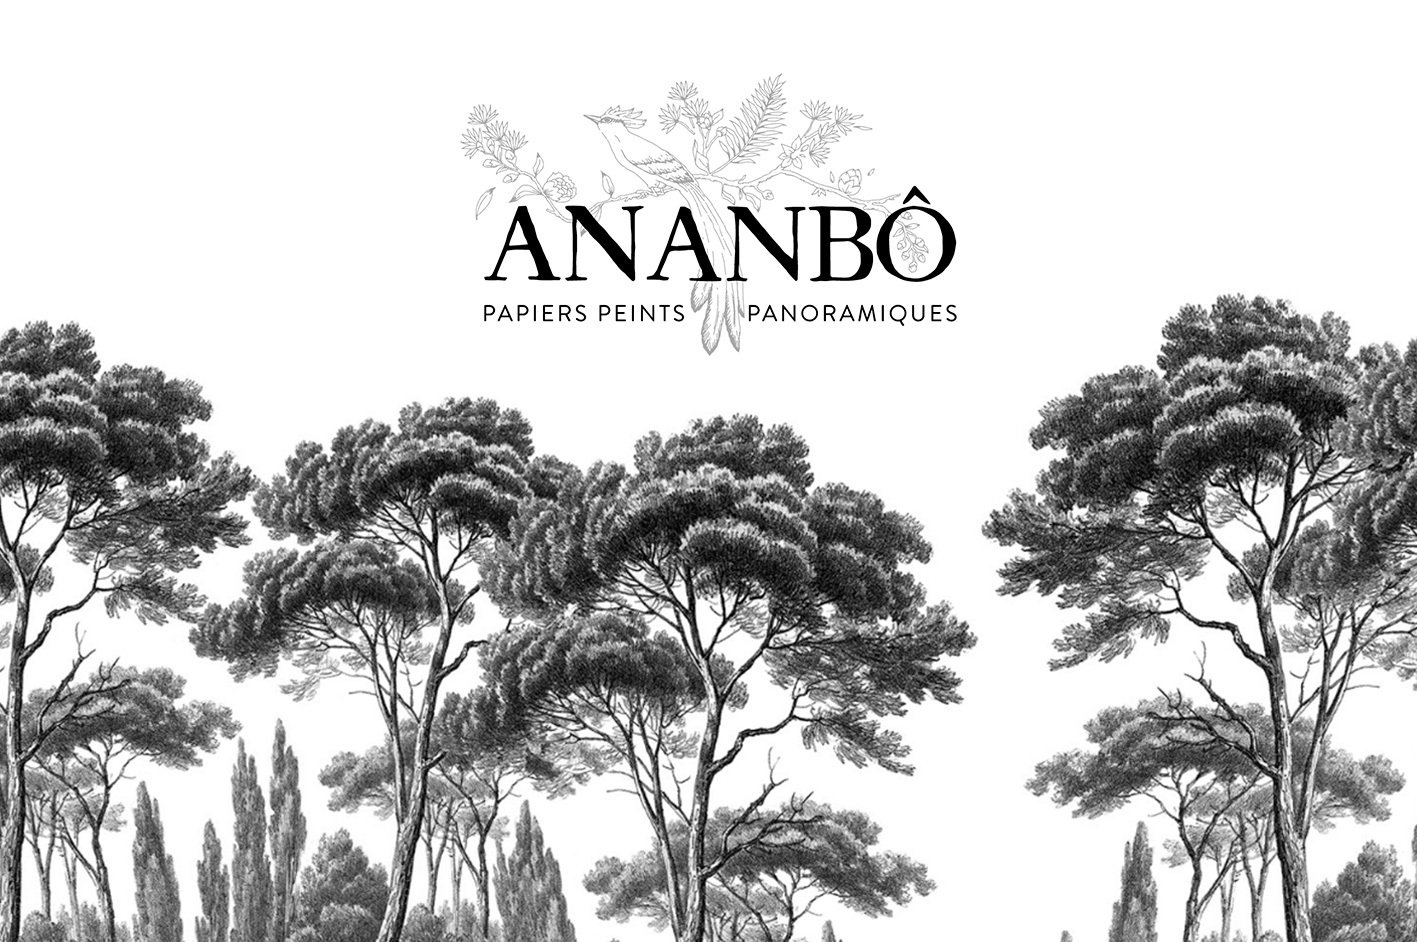 Access Base Sud a développer le site internet Ananbô, spécialisé dans le papier peint panoramique